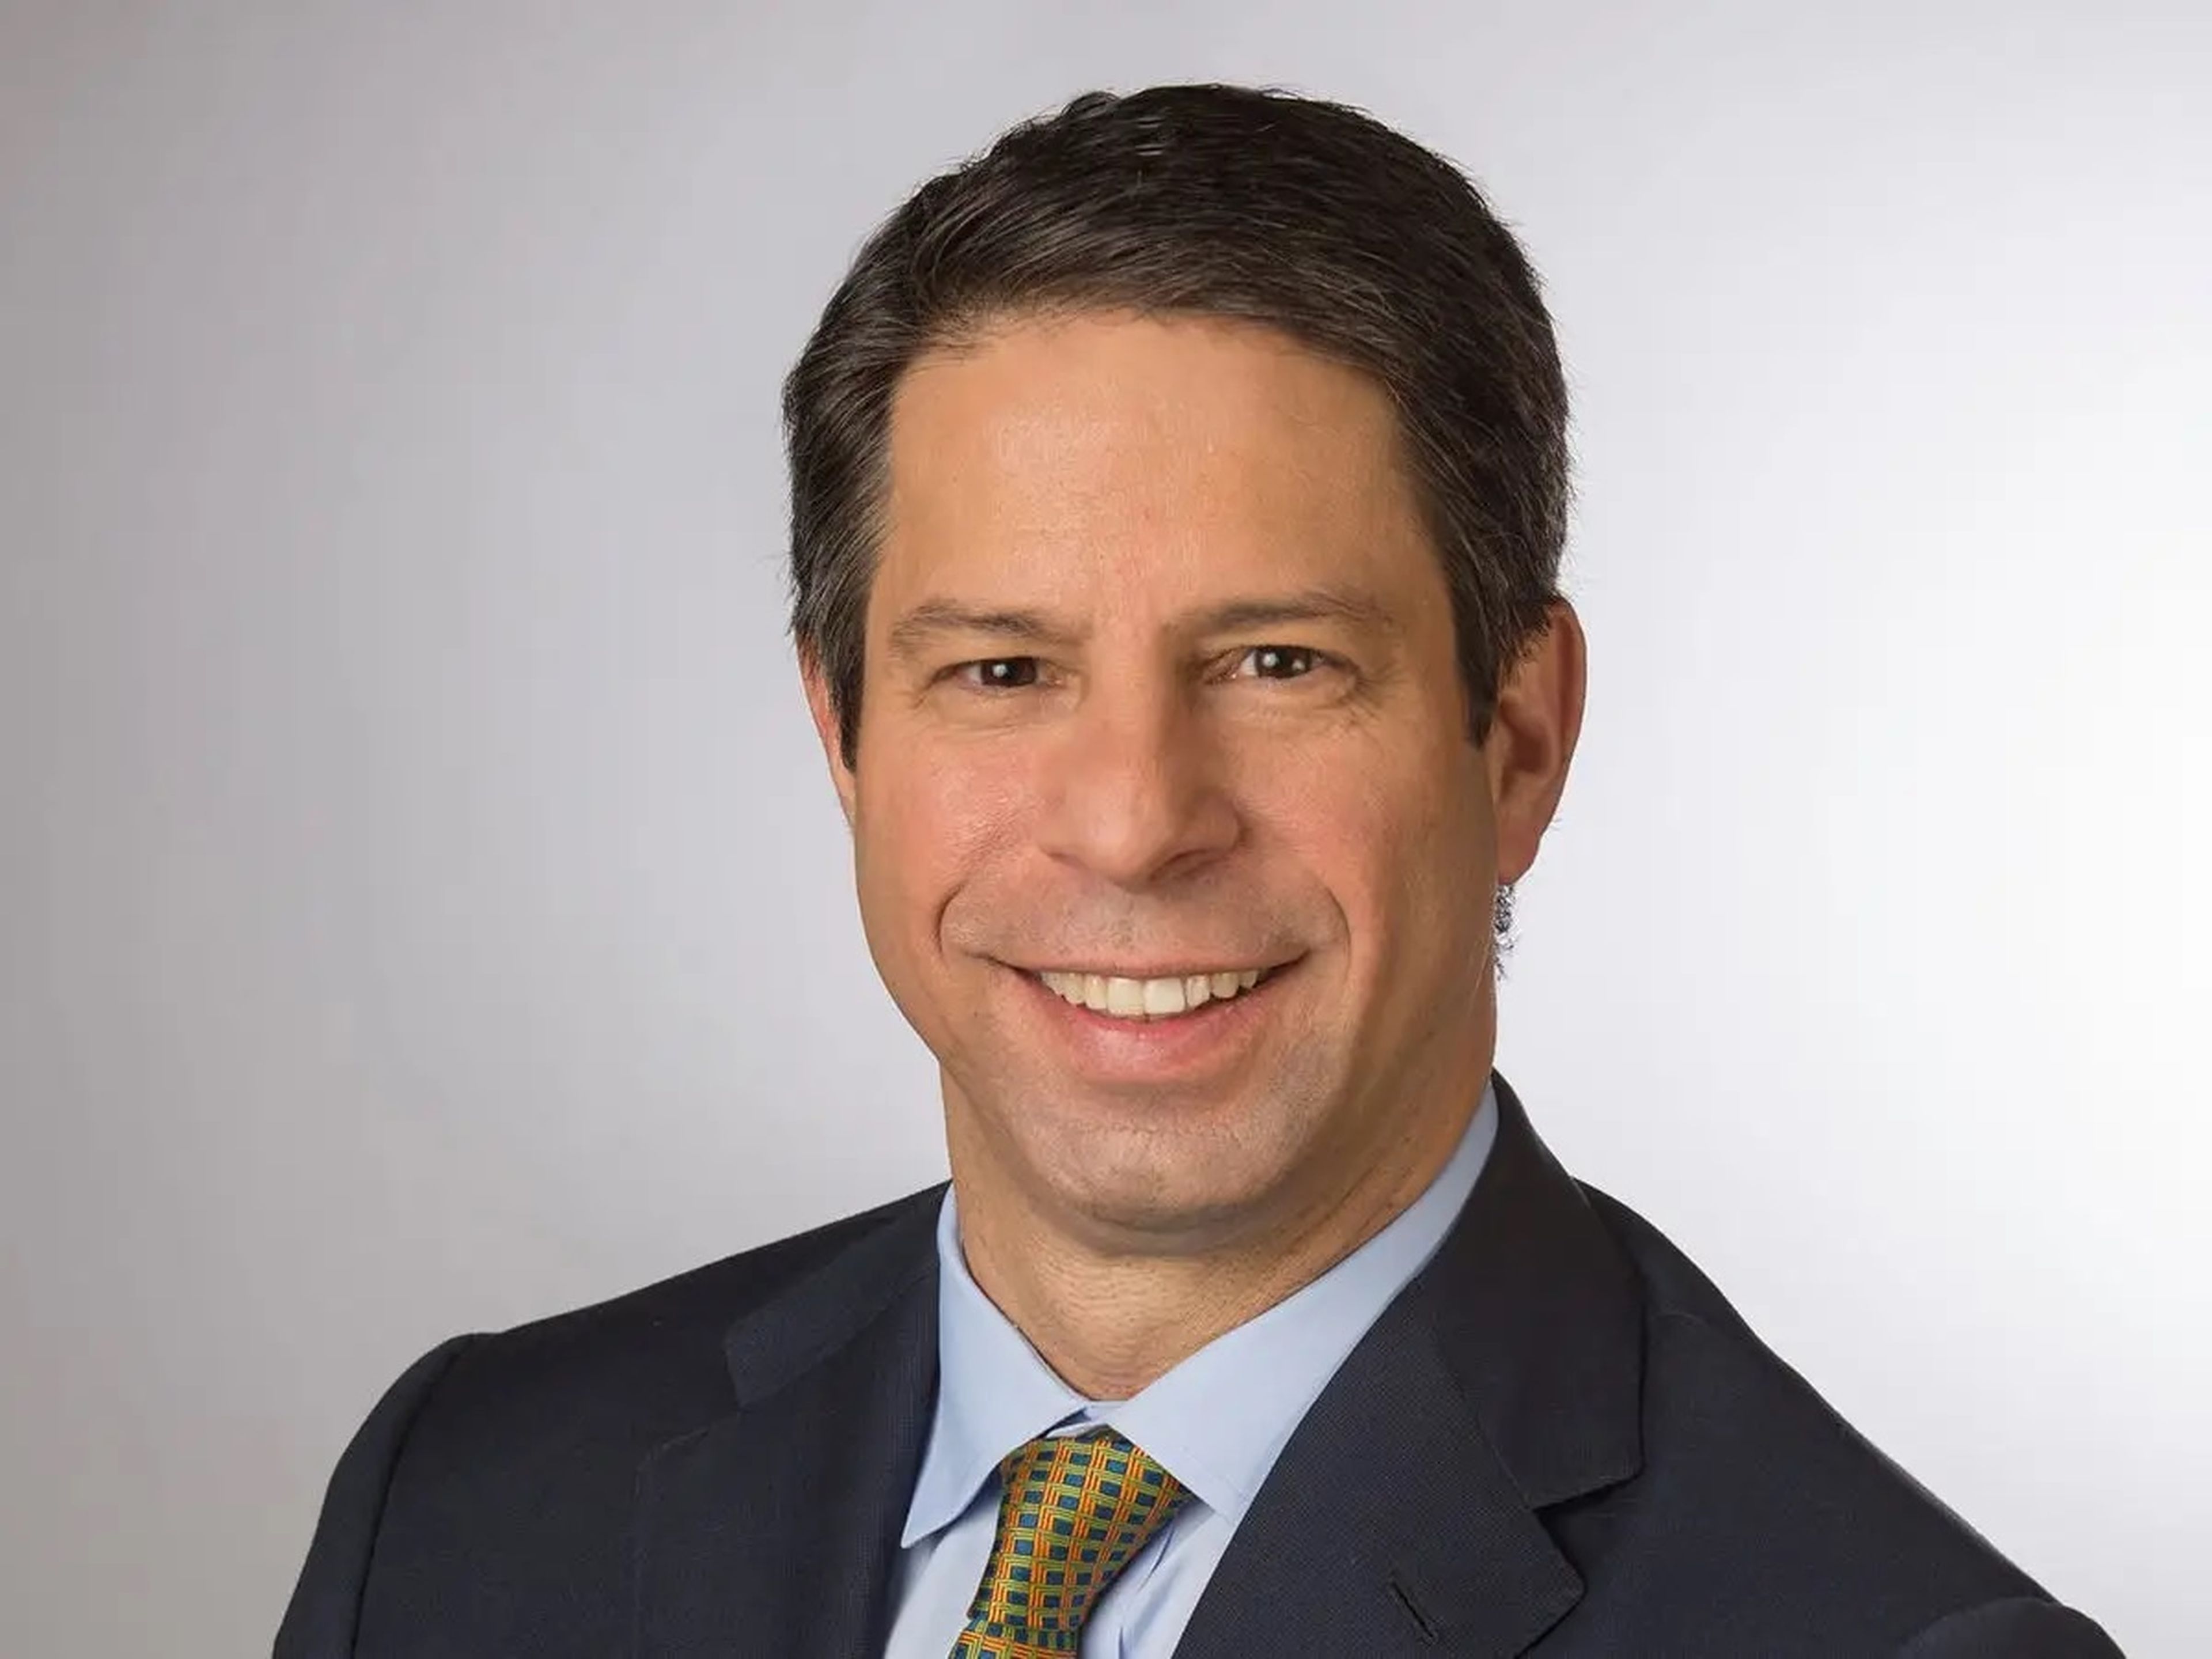 Dan Simkowitz, jefe de gestión de inversiones de Morgan Stanley y tapado en la carrera por la presidencia.